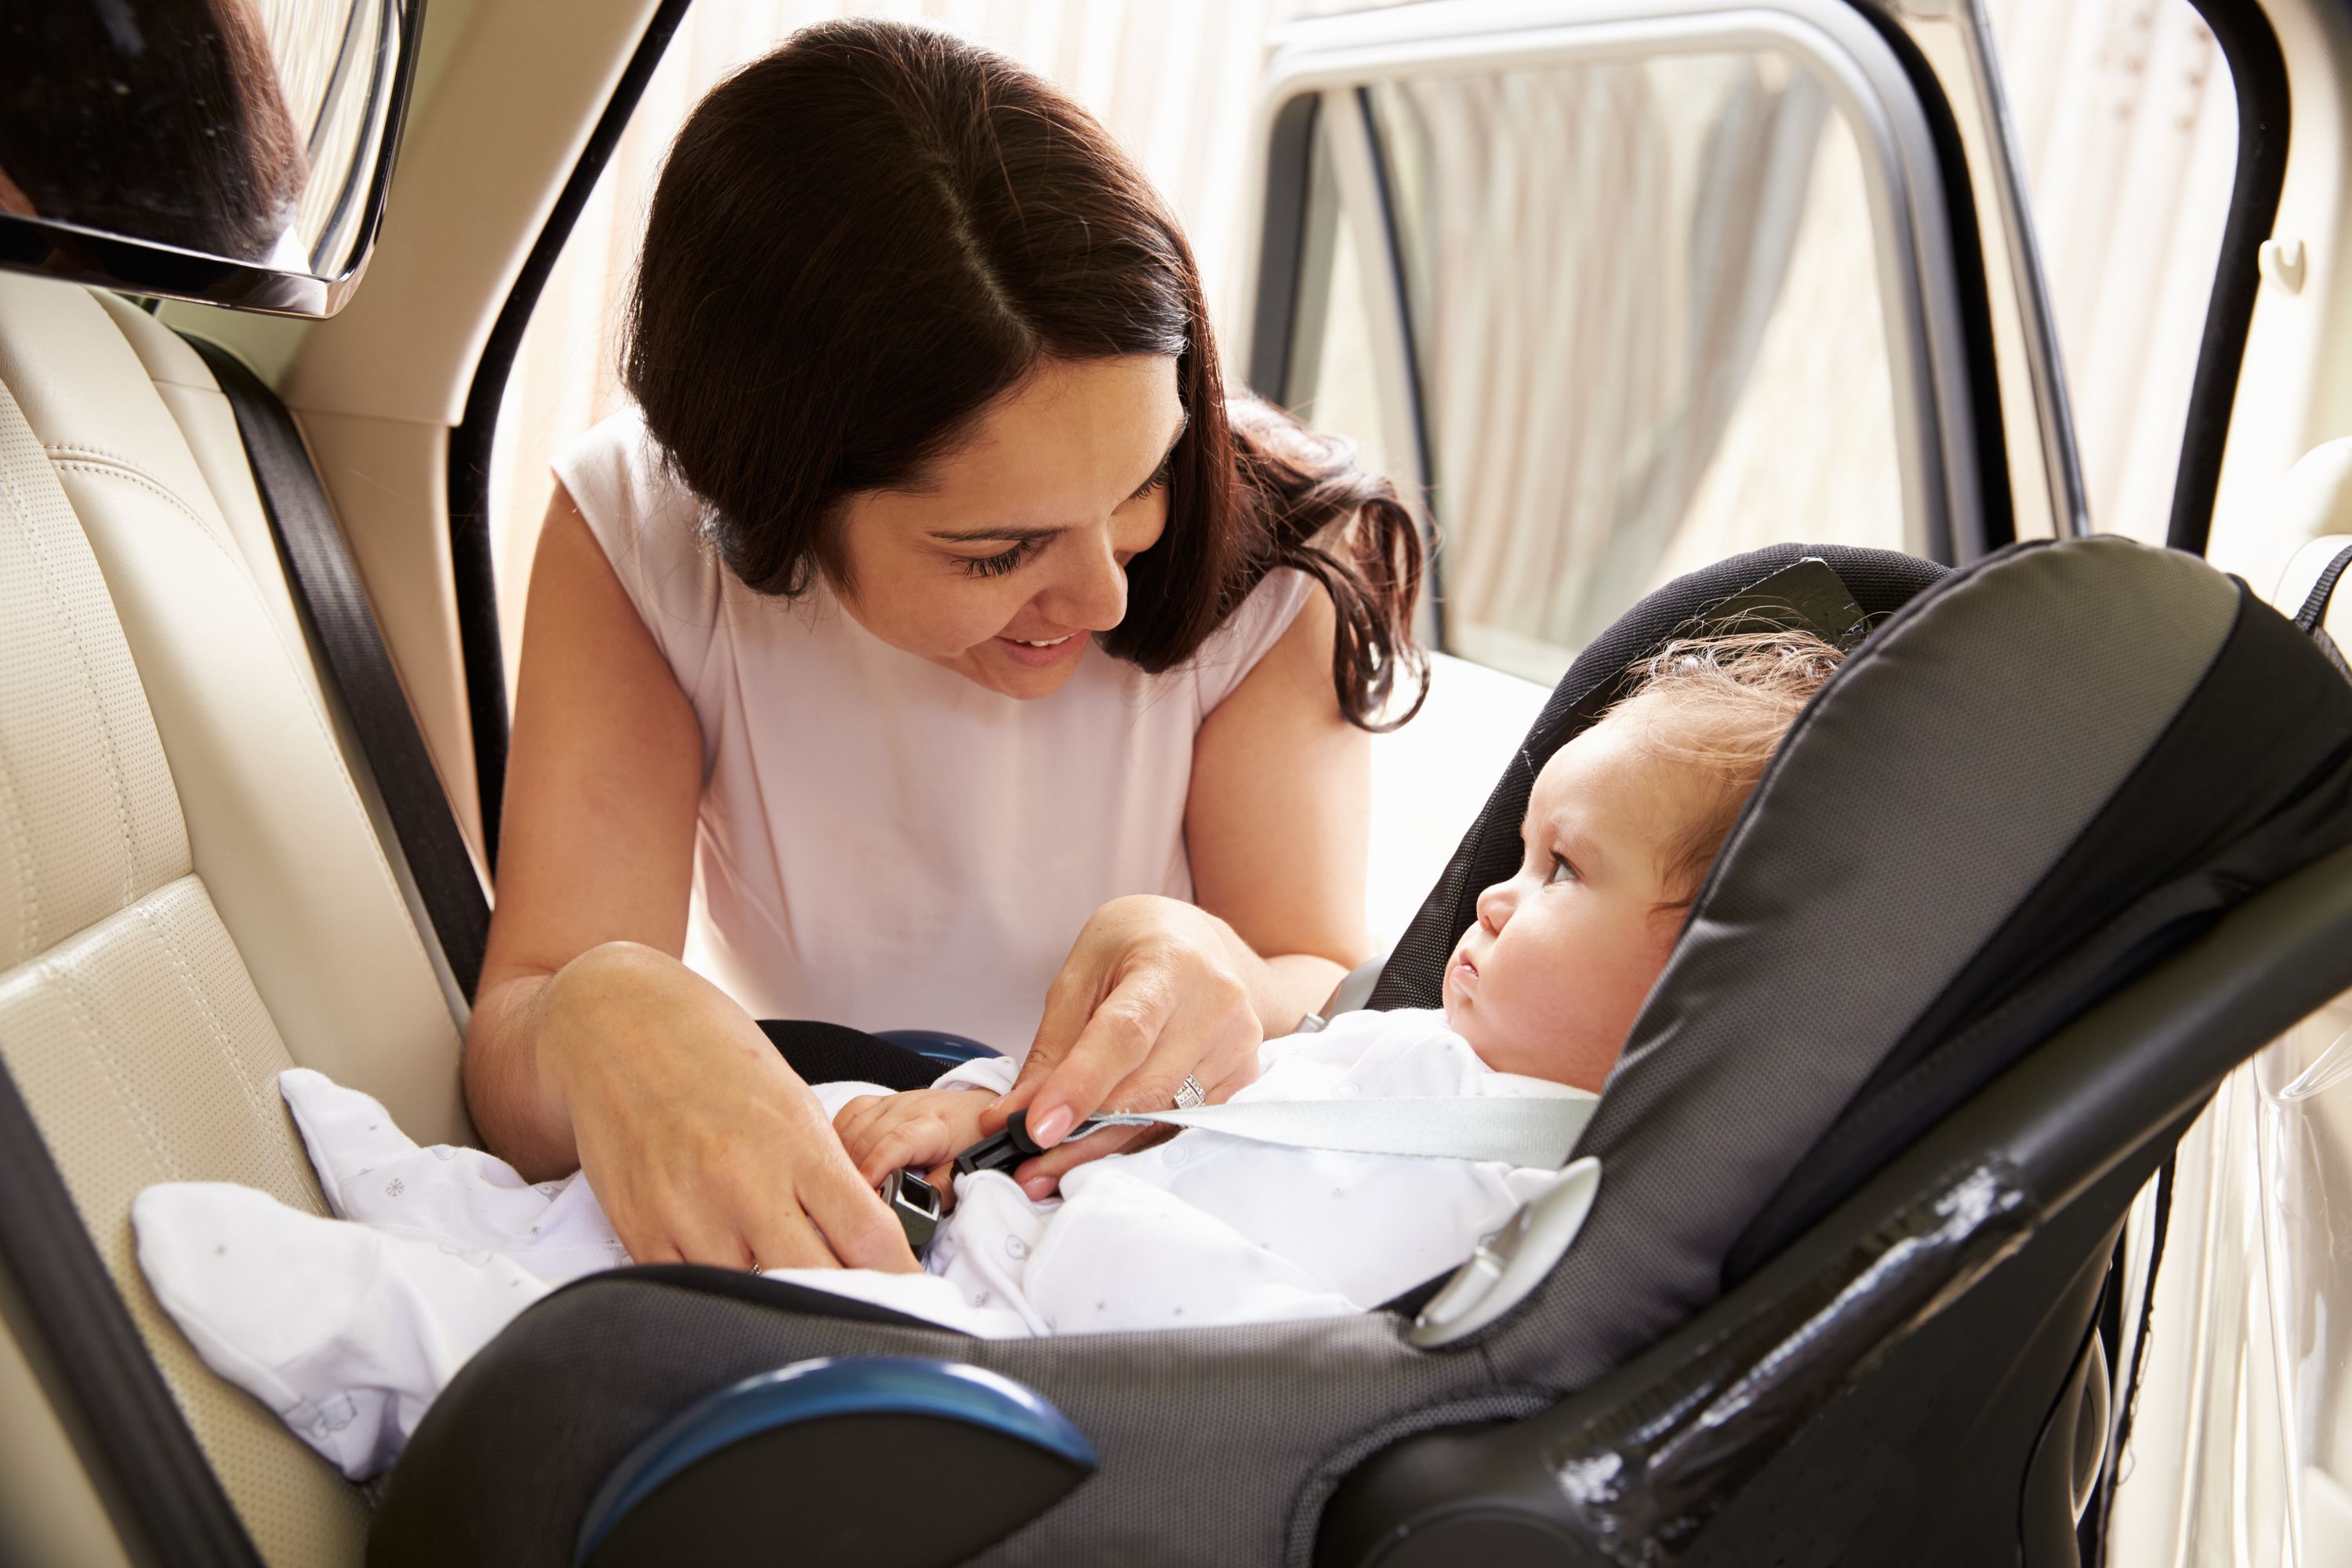 Autofahren mit Baby: Welche Vorschriften sind zu beachten?